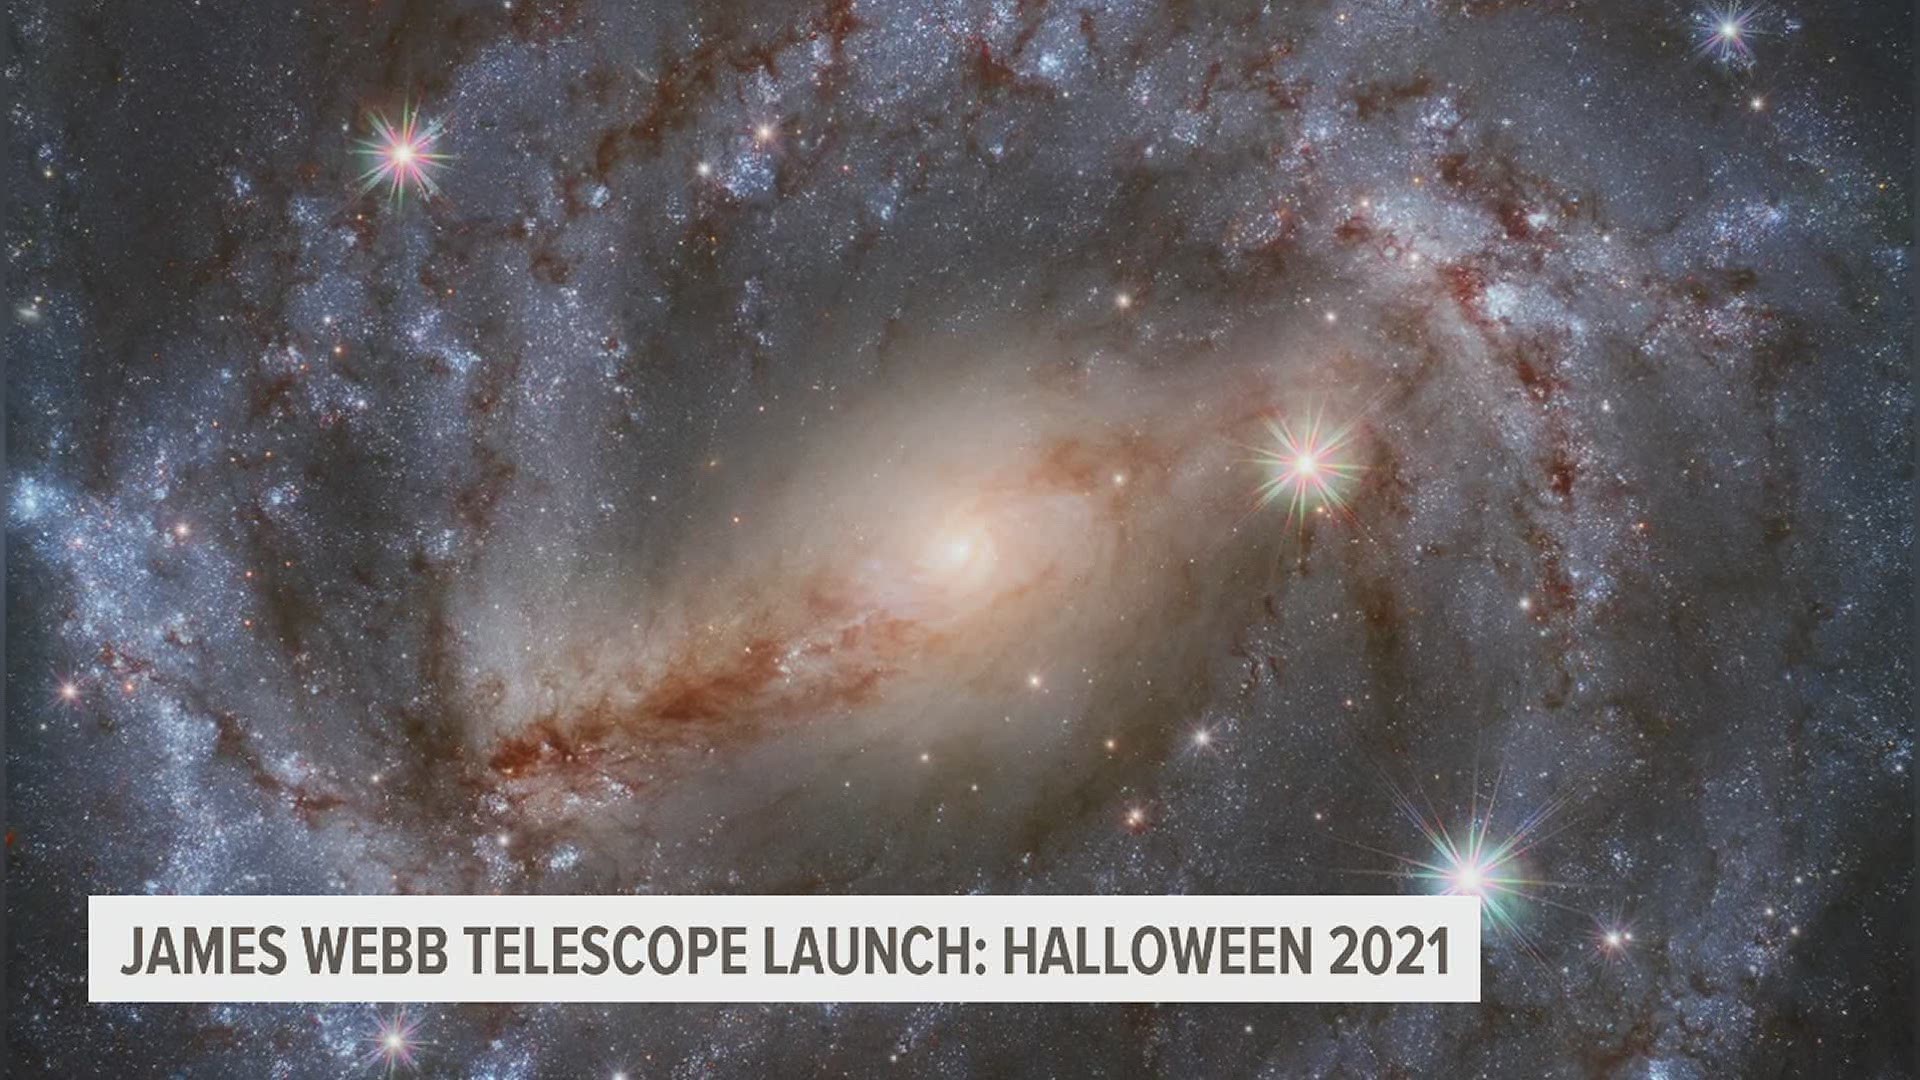 James Webb Telescope launch: Halloween 2021